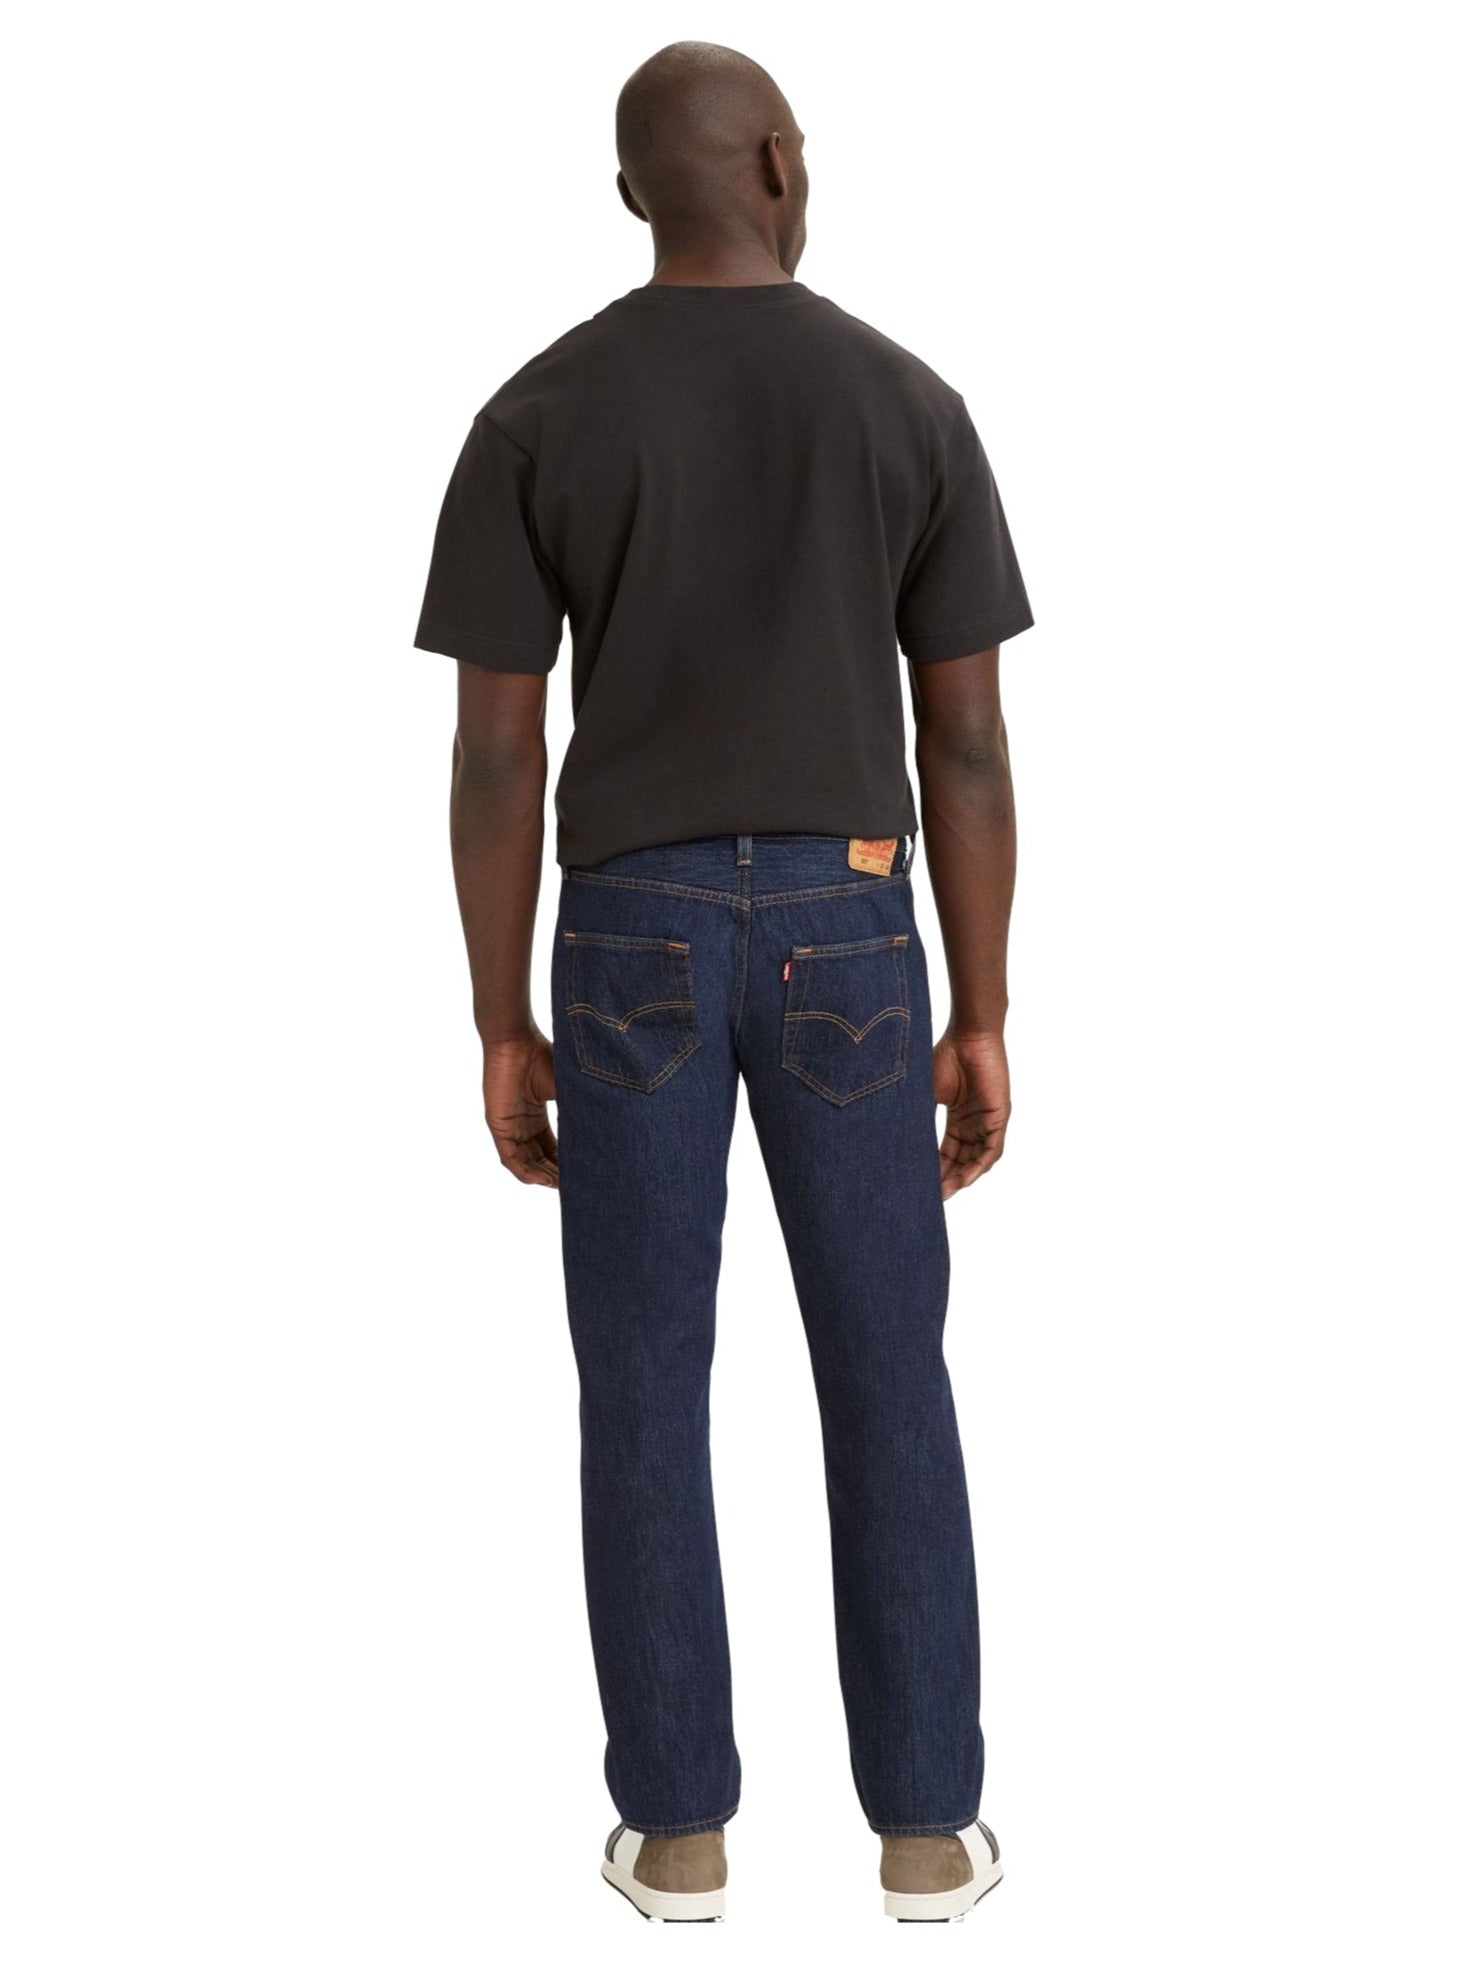 Levi's - 501 Original Fit - Medium Stonewash – 88 Jeans